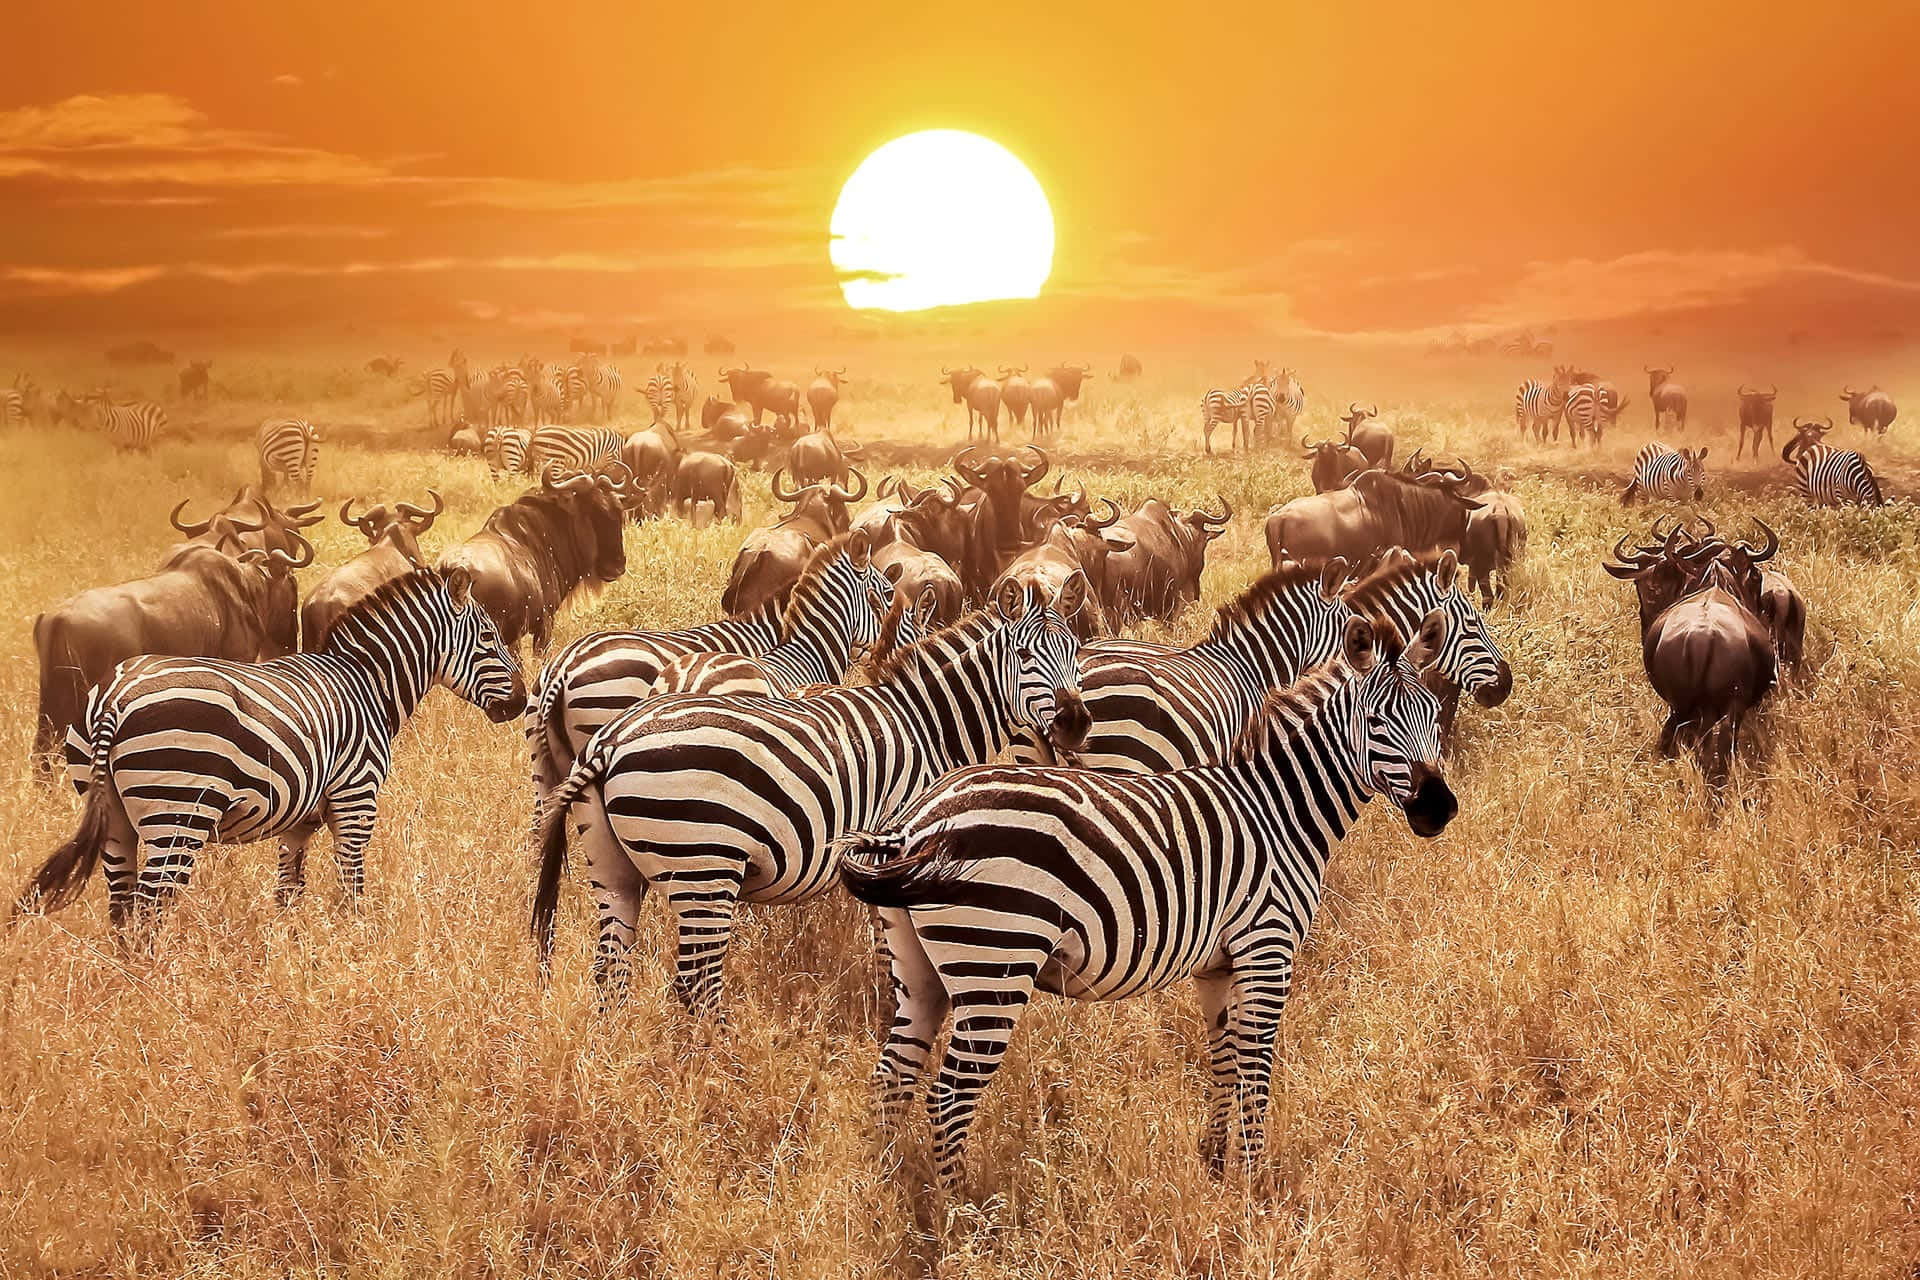 Imagende La Puesta De Sol Africana Con Una Cebra De Safari